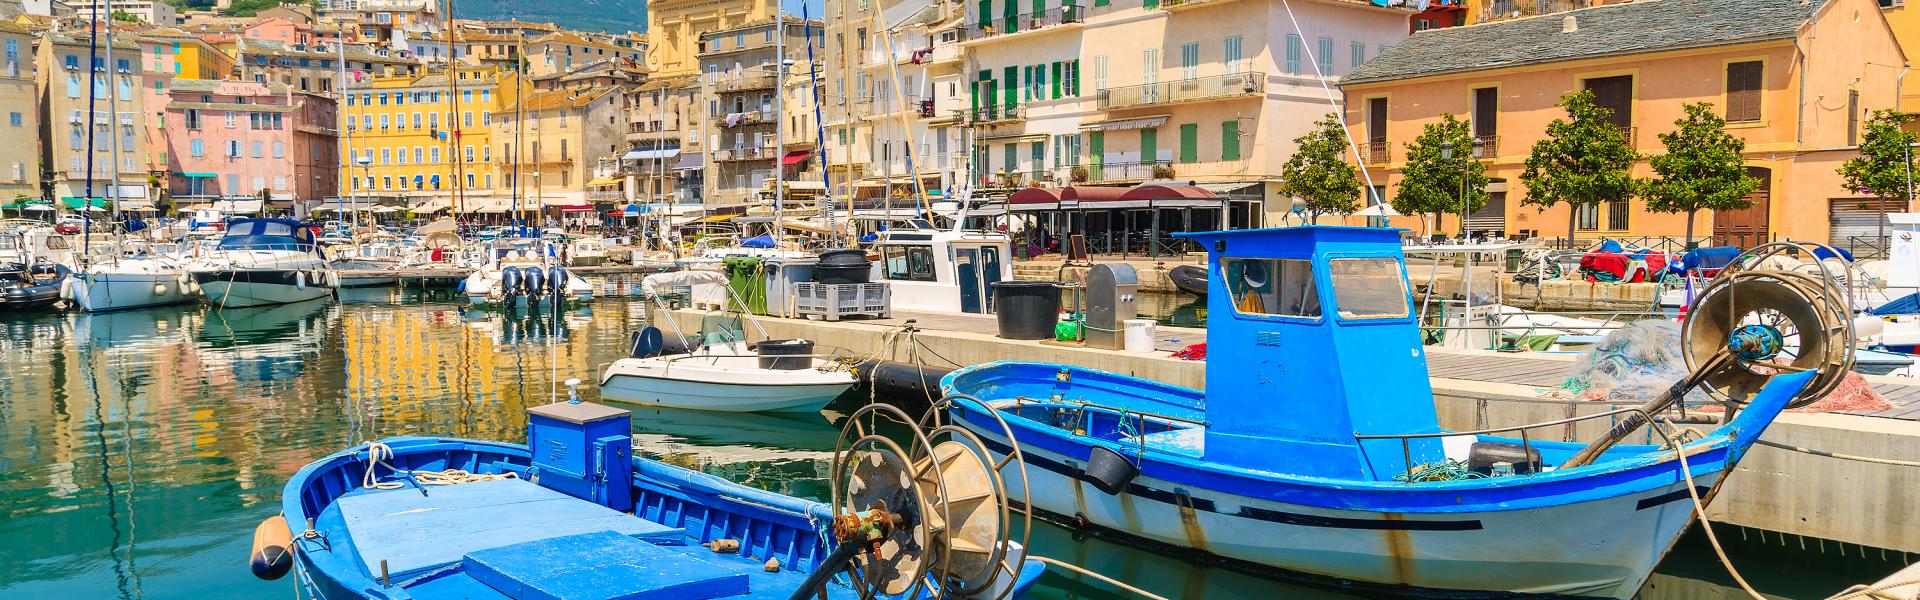 Noclegi i apartamenty wakacyjne na Korsyce - Casamundo